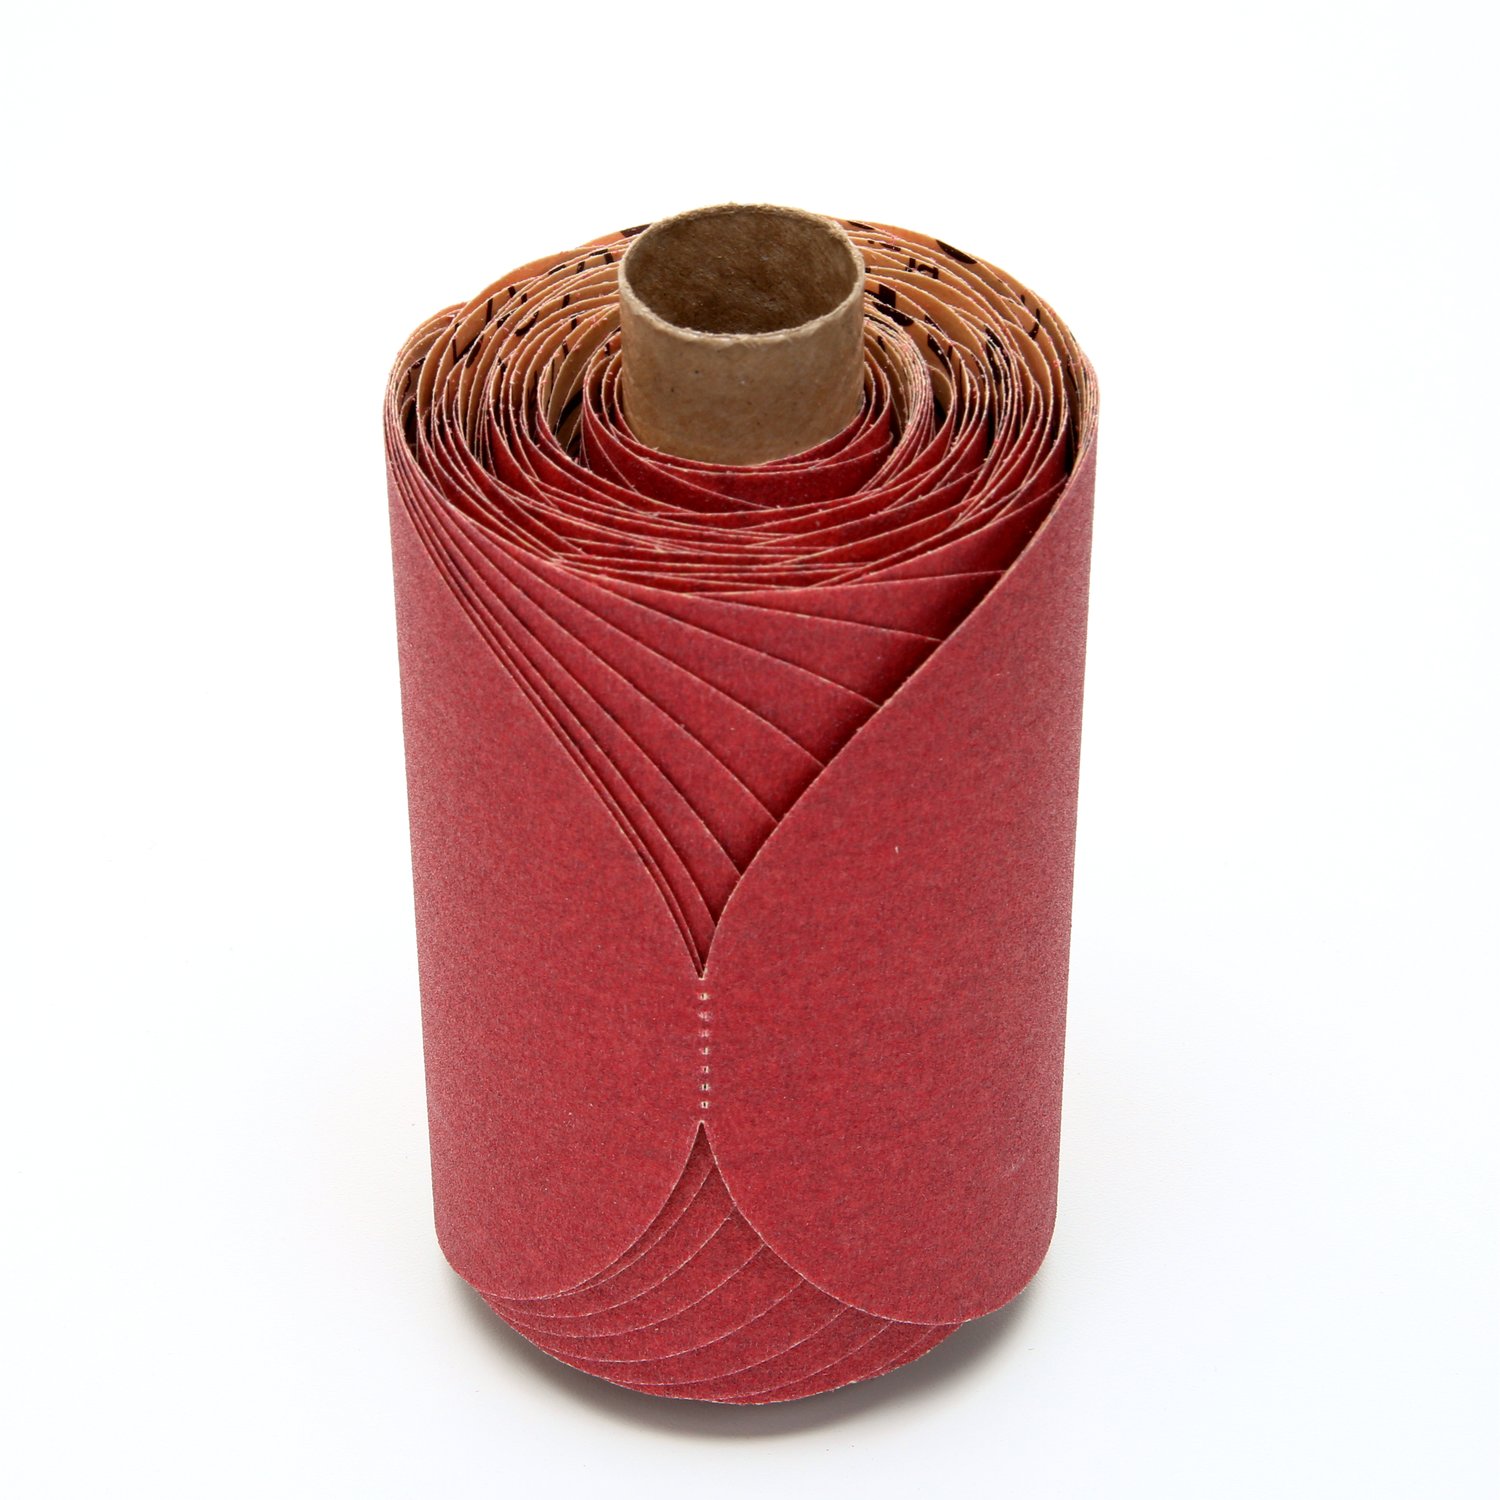 7000119915 - 3M Red Abrasive PSA Disc, 01607, 5 in, P150, 100 discs per roll, 6
rolls per case